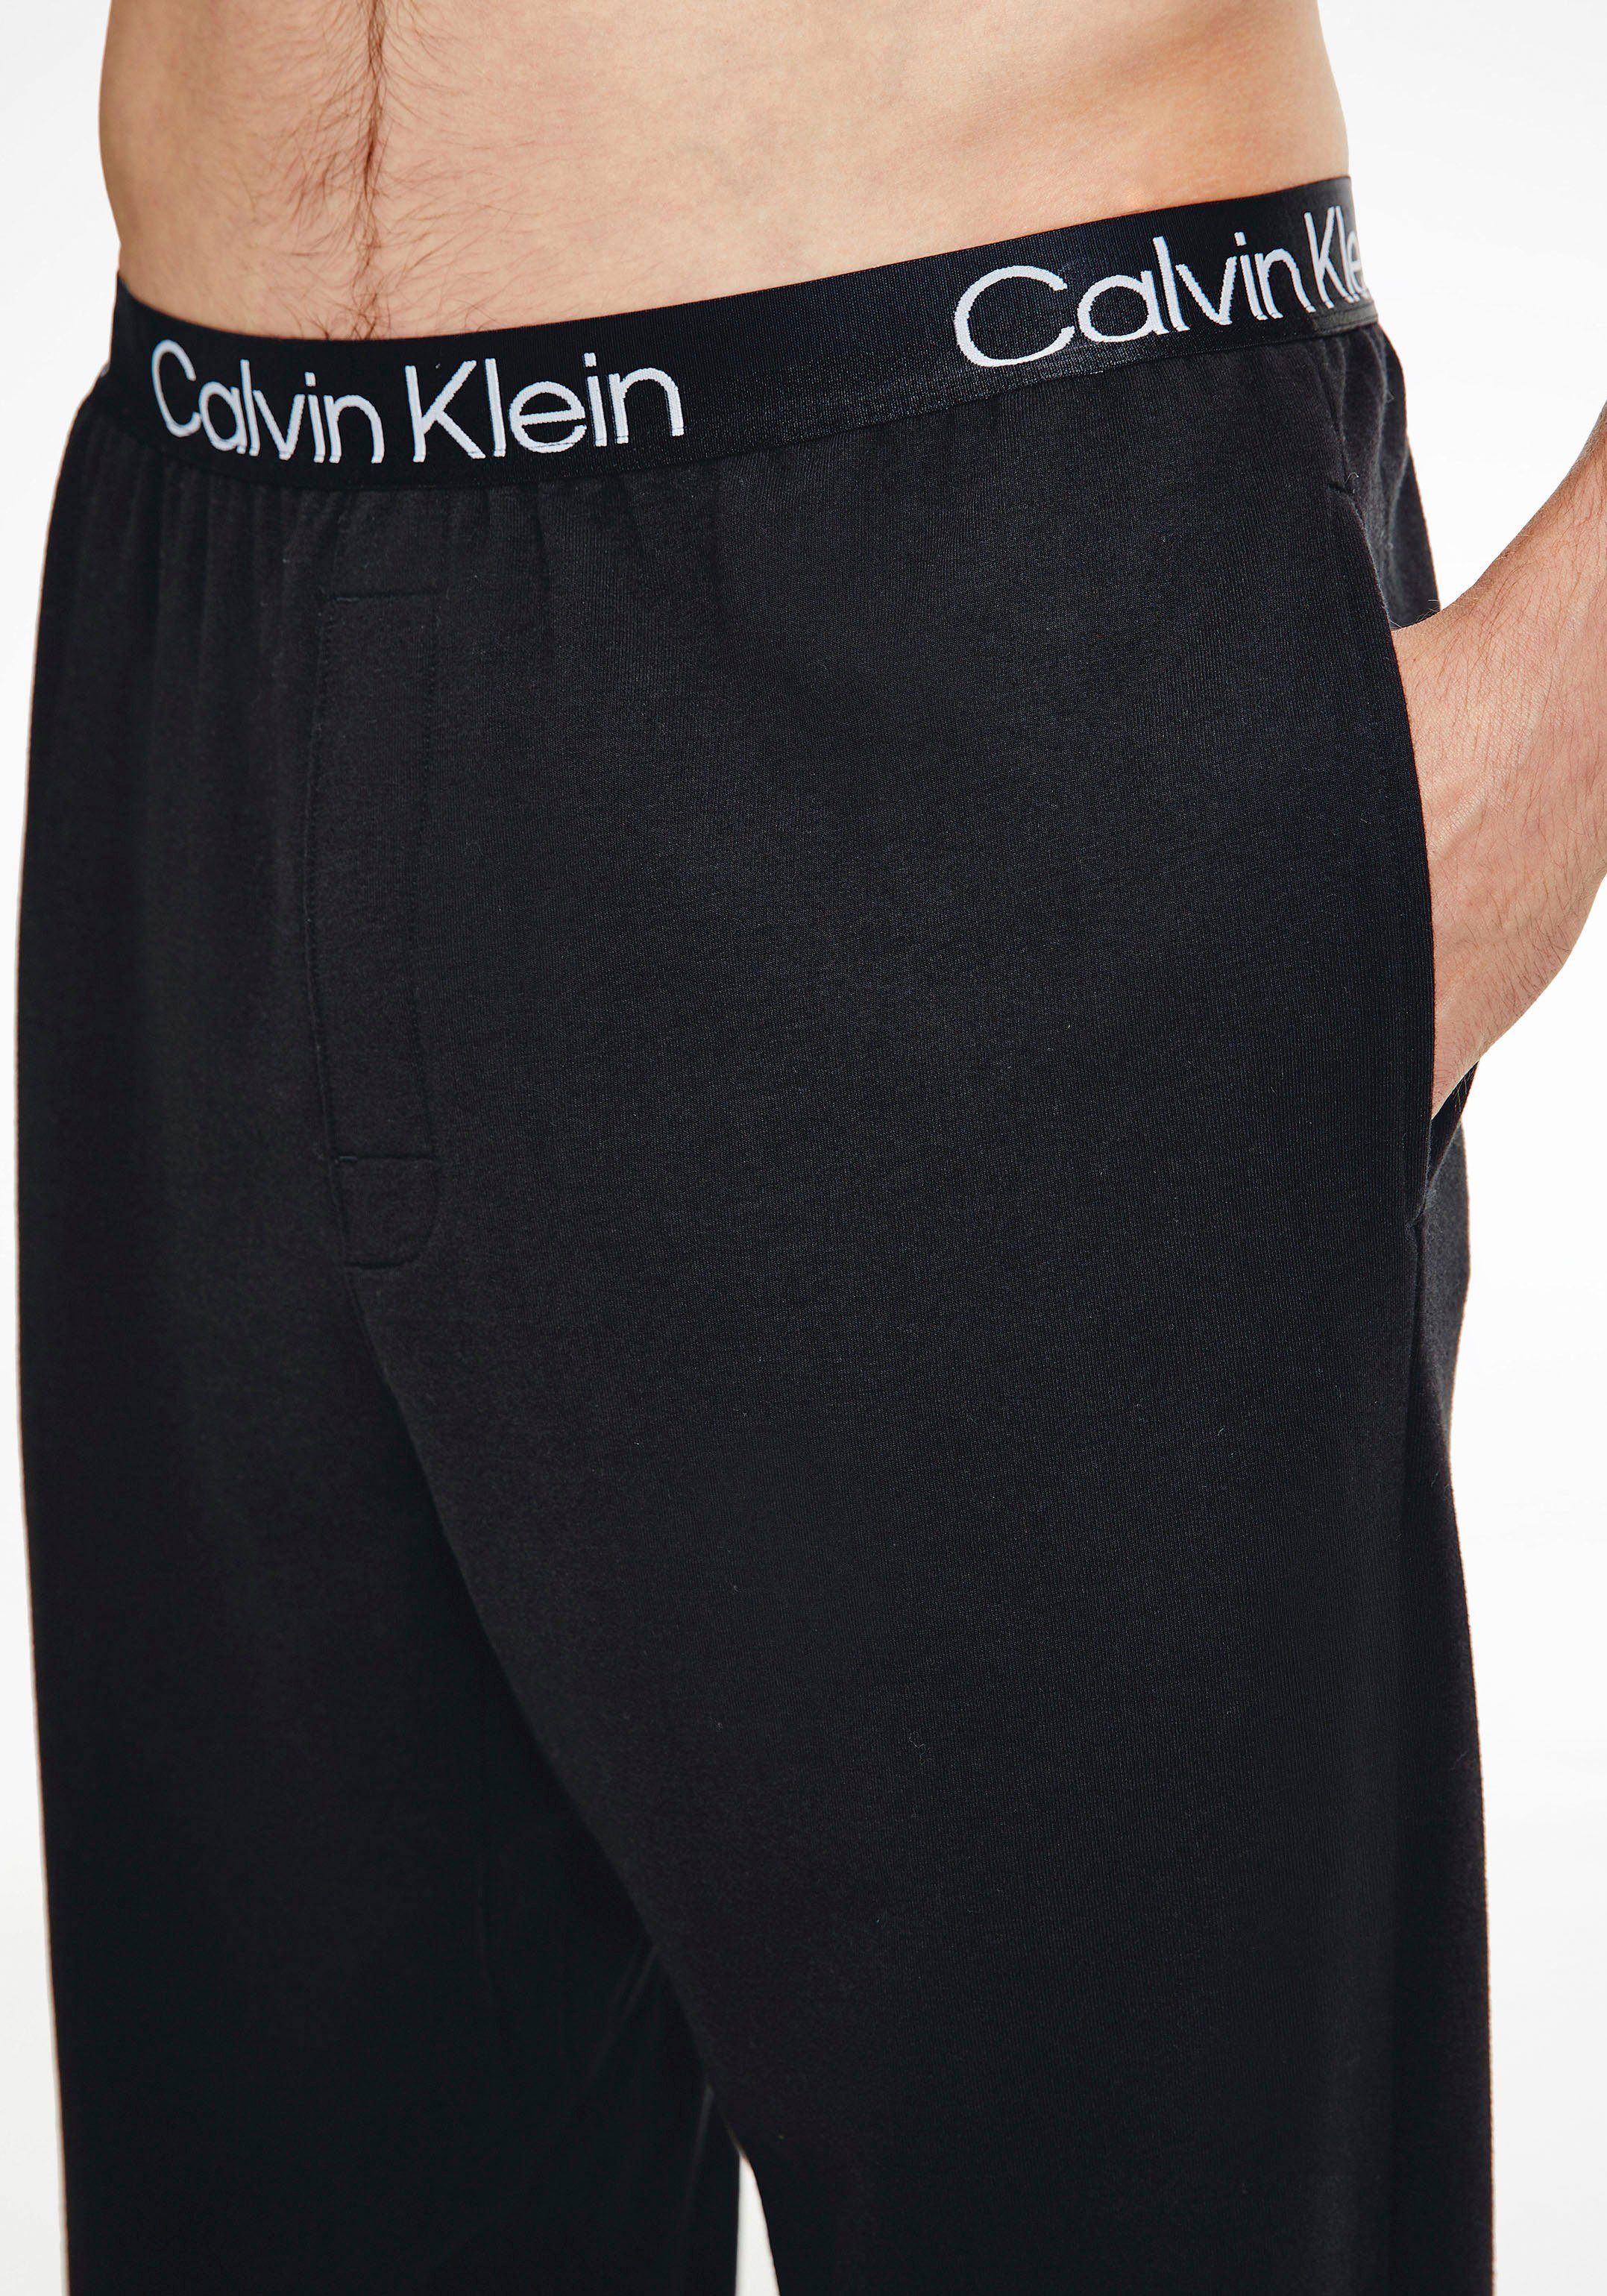 Klein Underwear Calvin Relaxhose